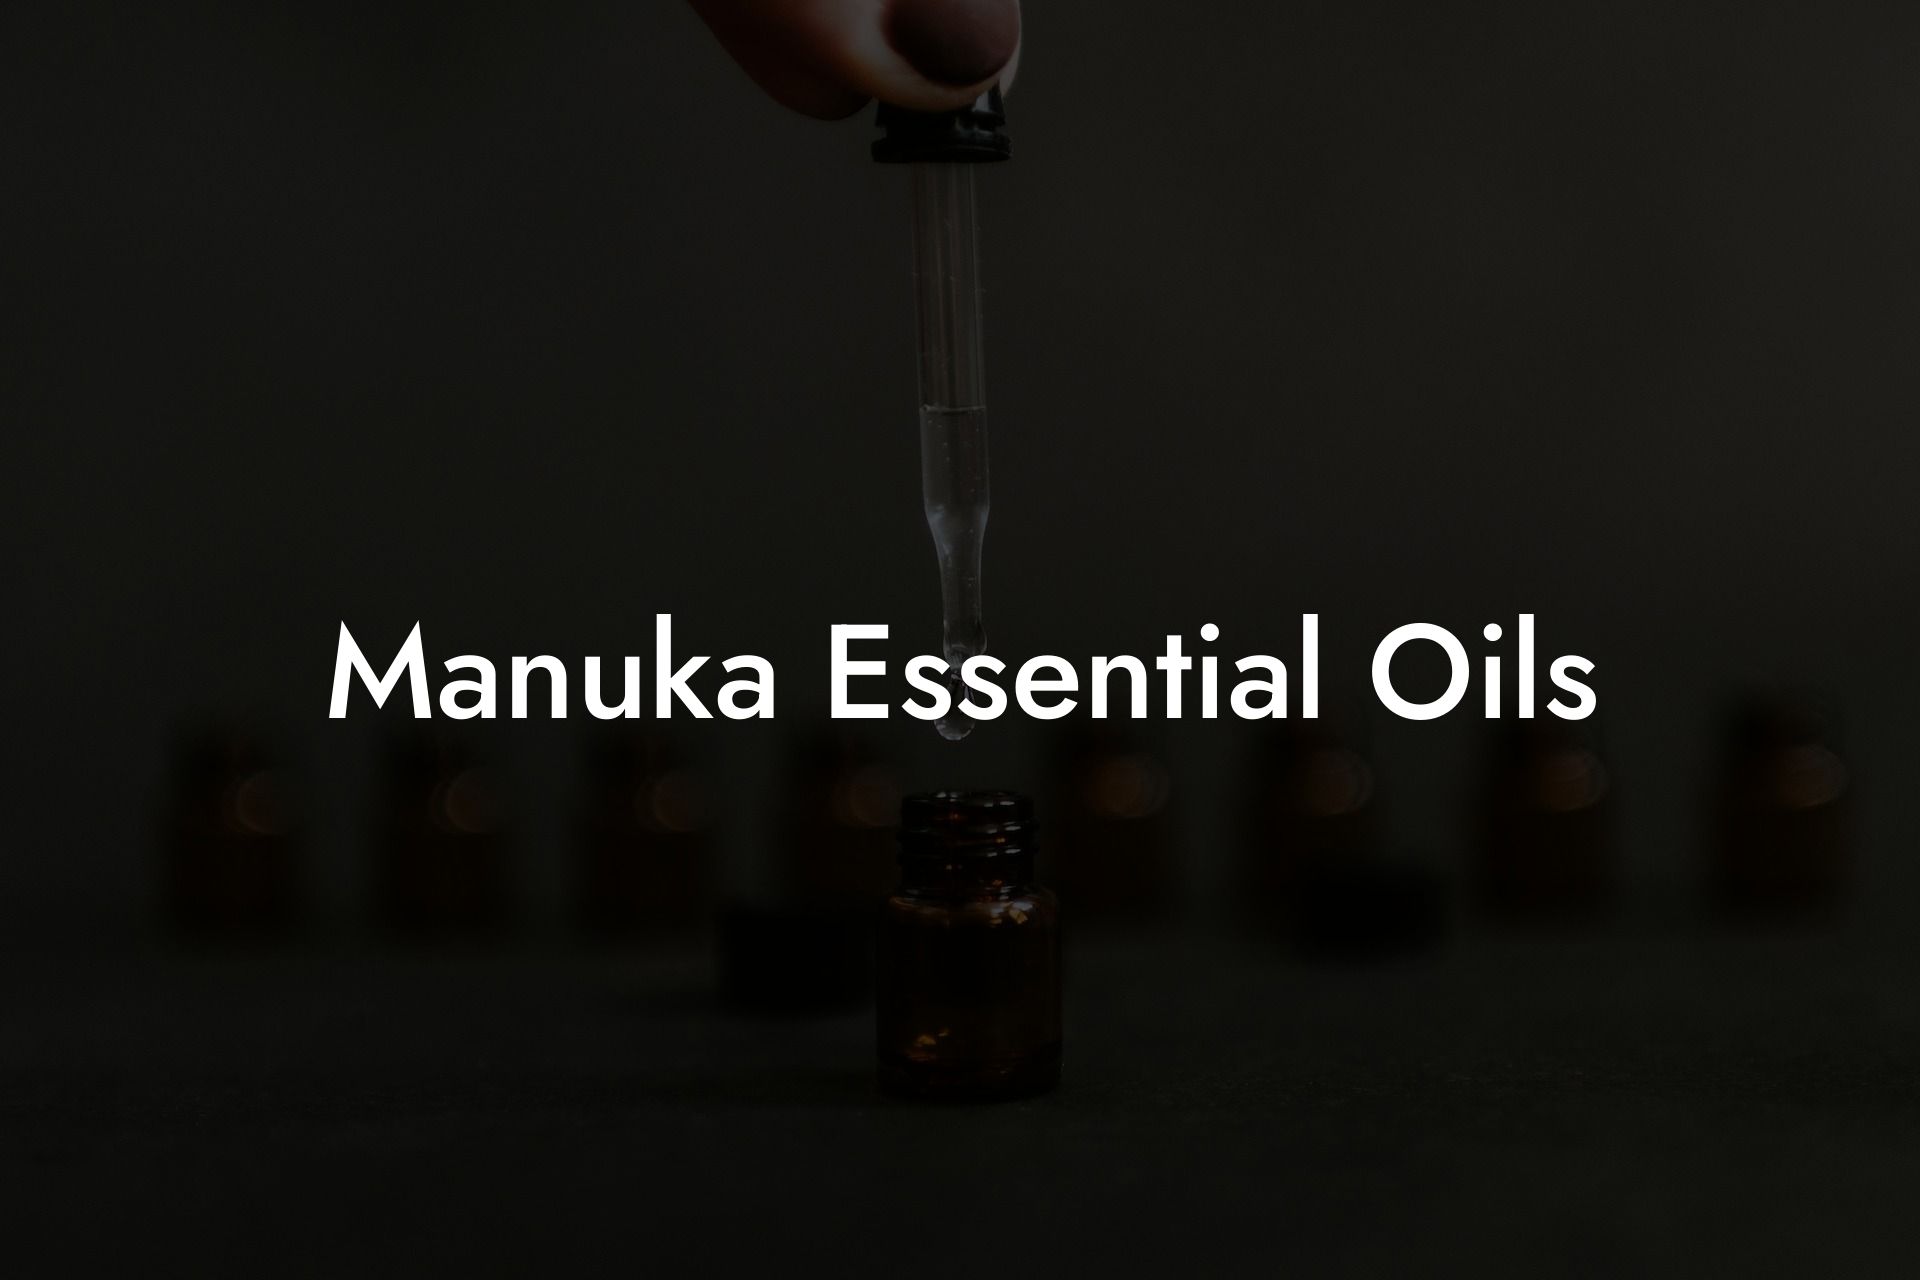 Manuka Essential Oils